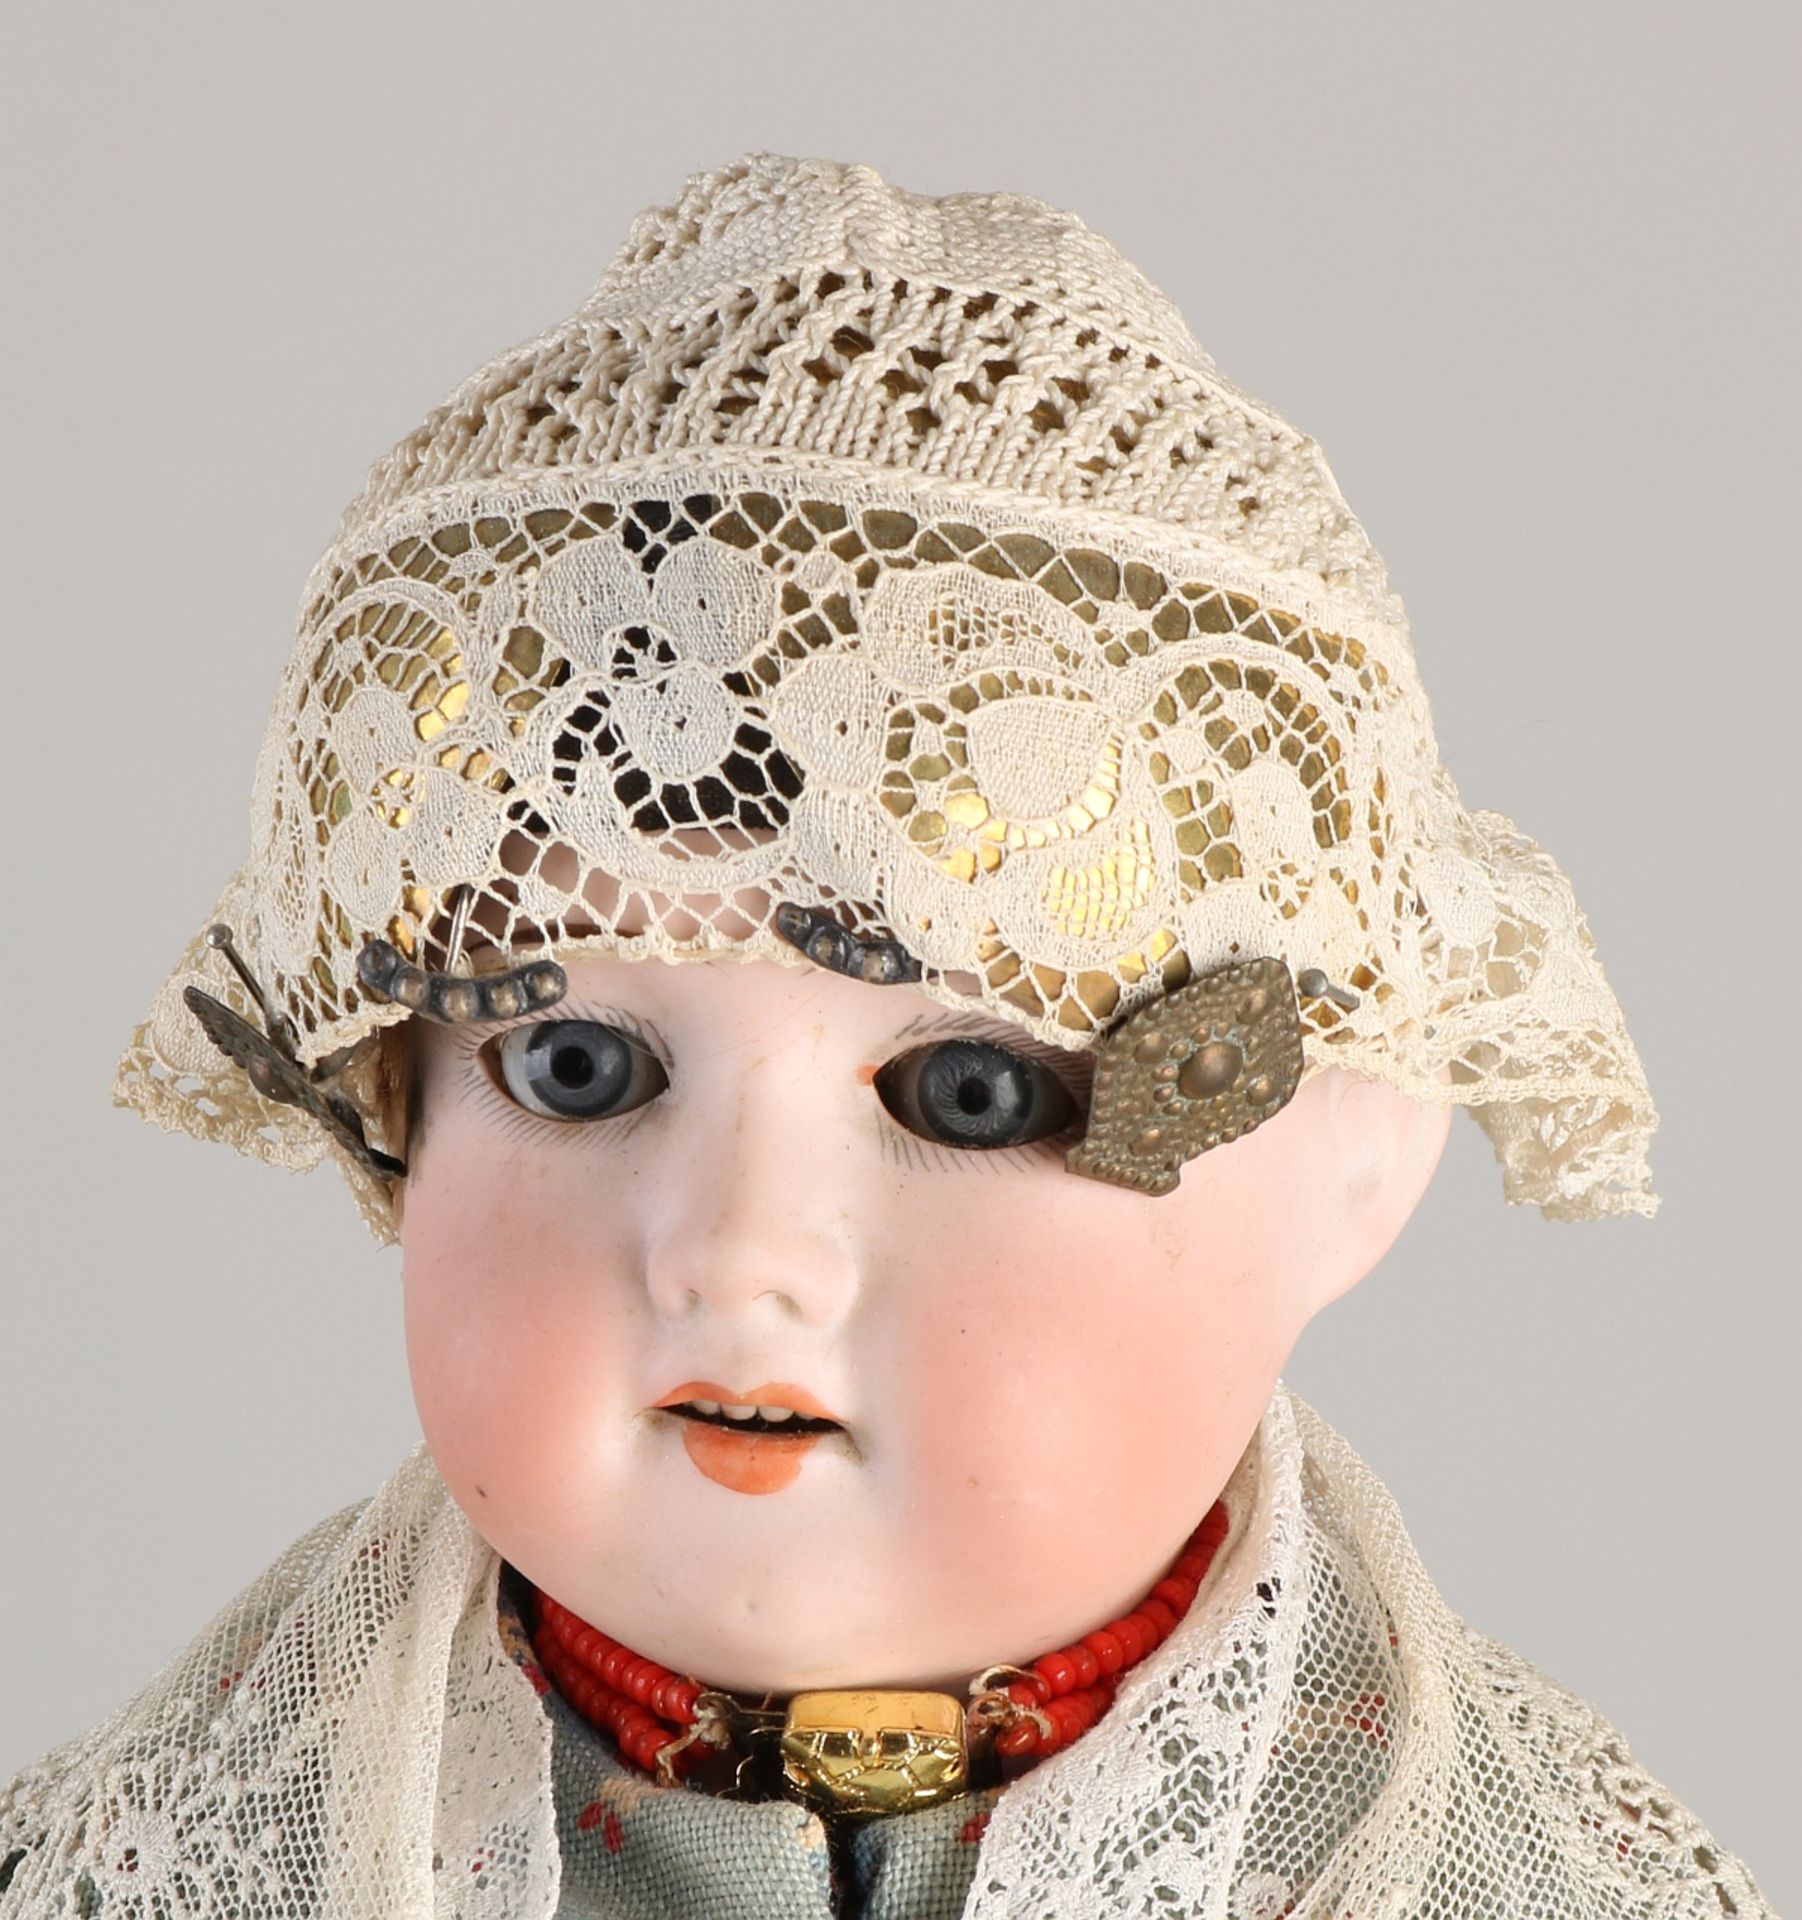 Antique porcelain doll - Image 3 of 3